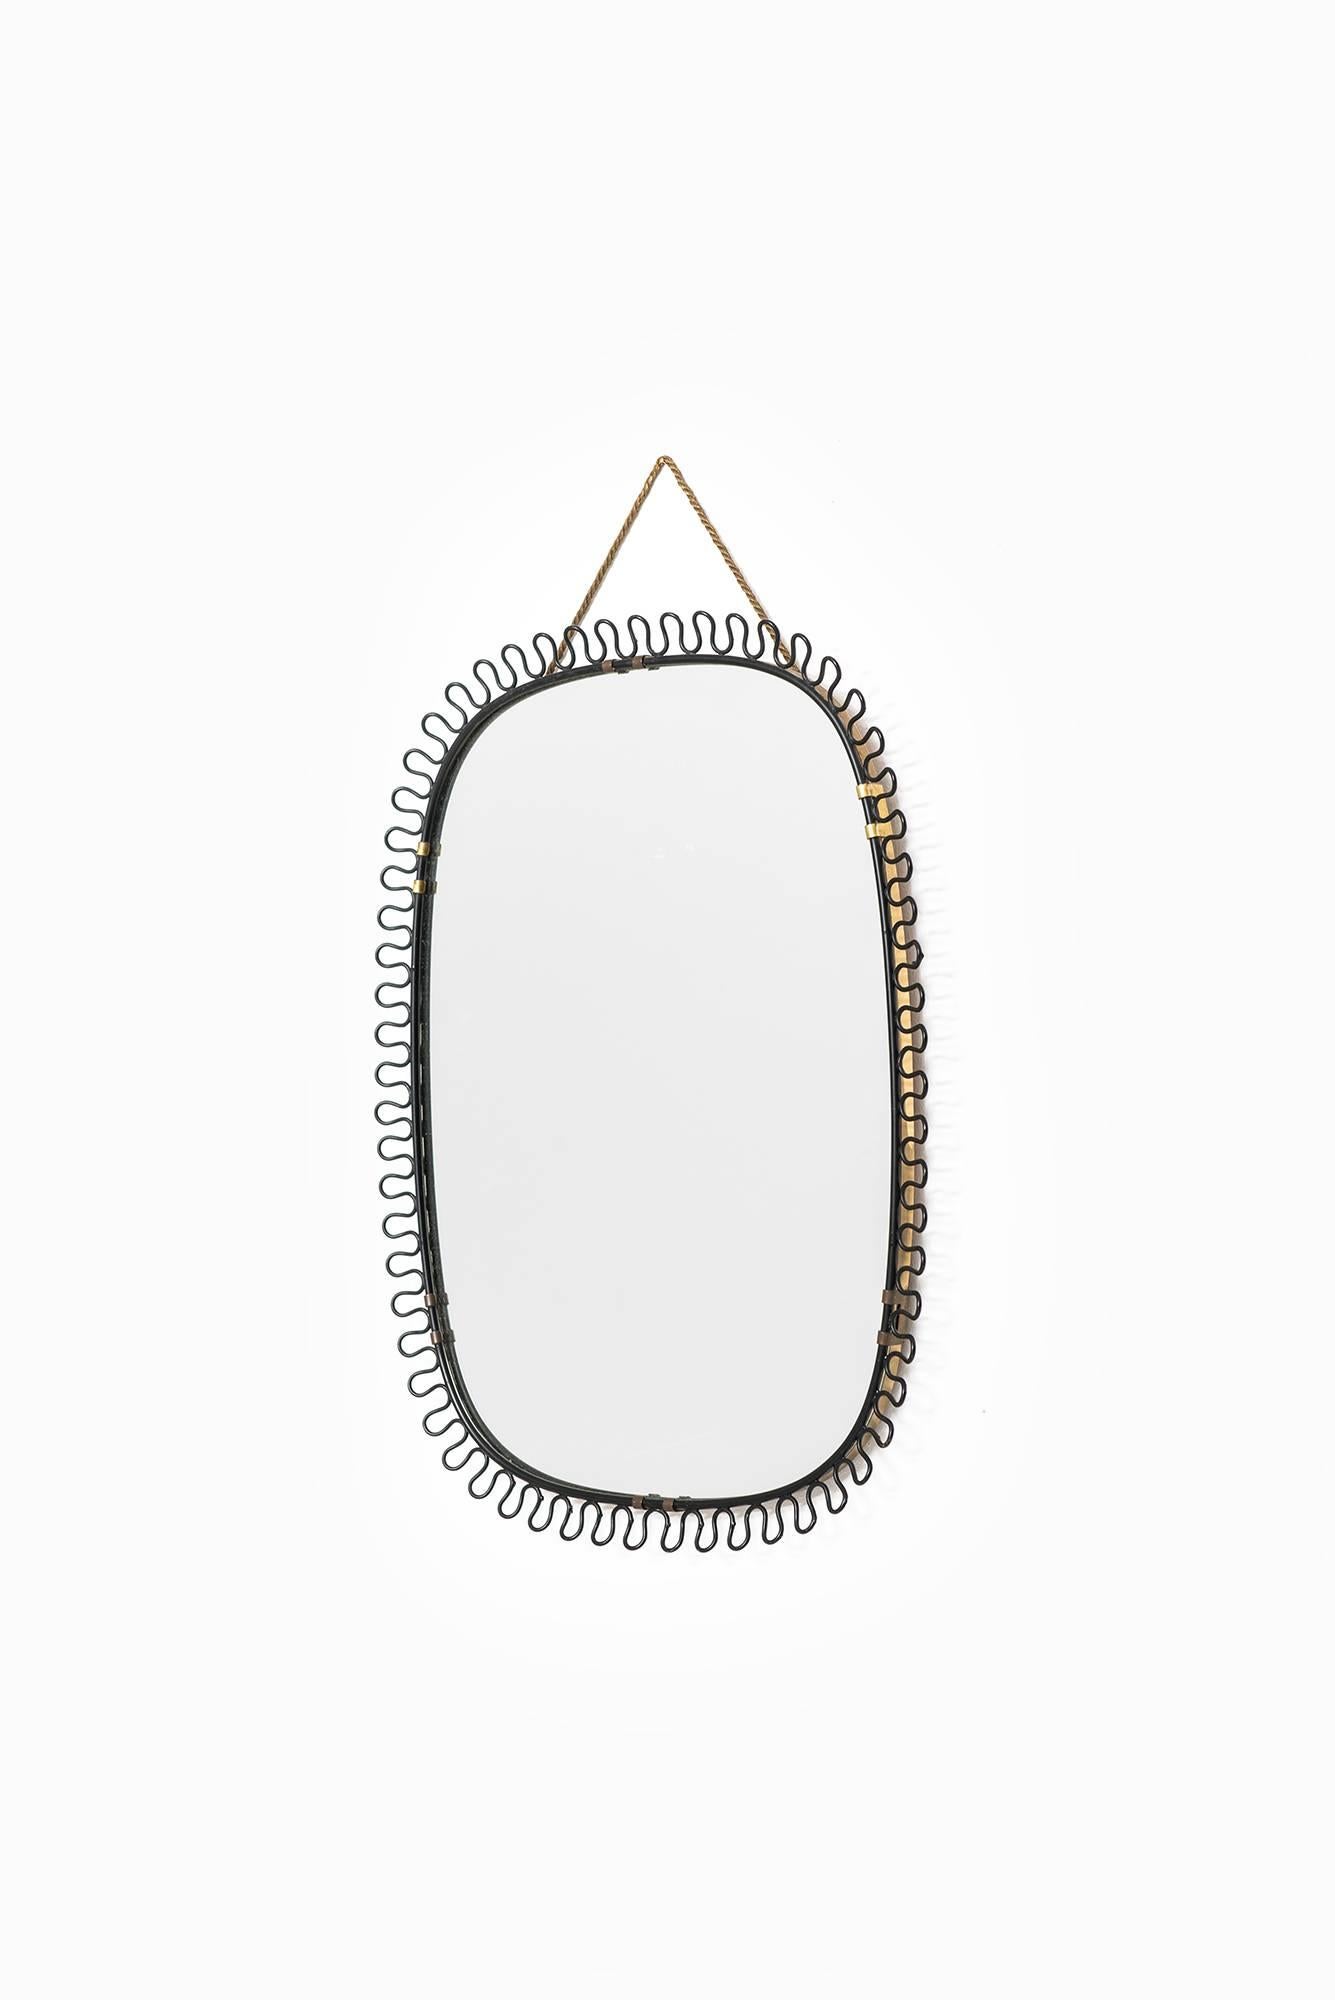 Mirror designed by Josef Frank. Produced by Svenskt Tenn in Sweden.